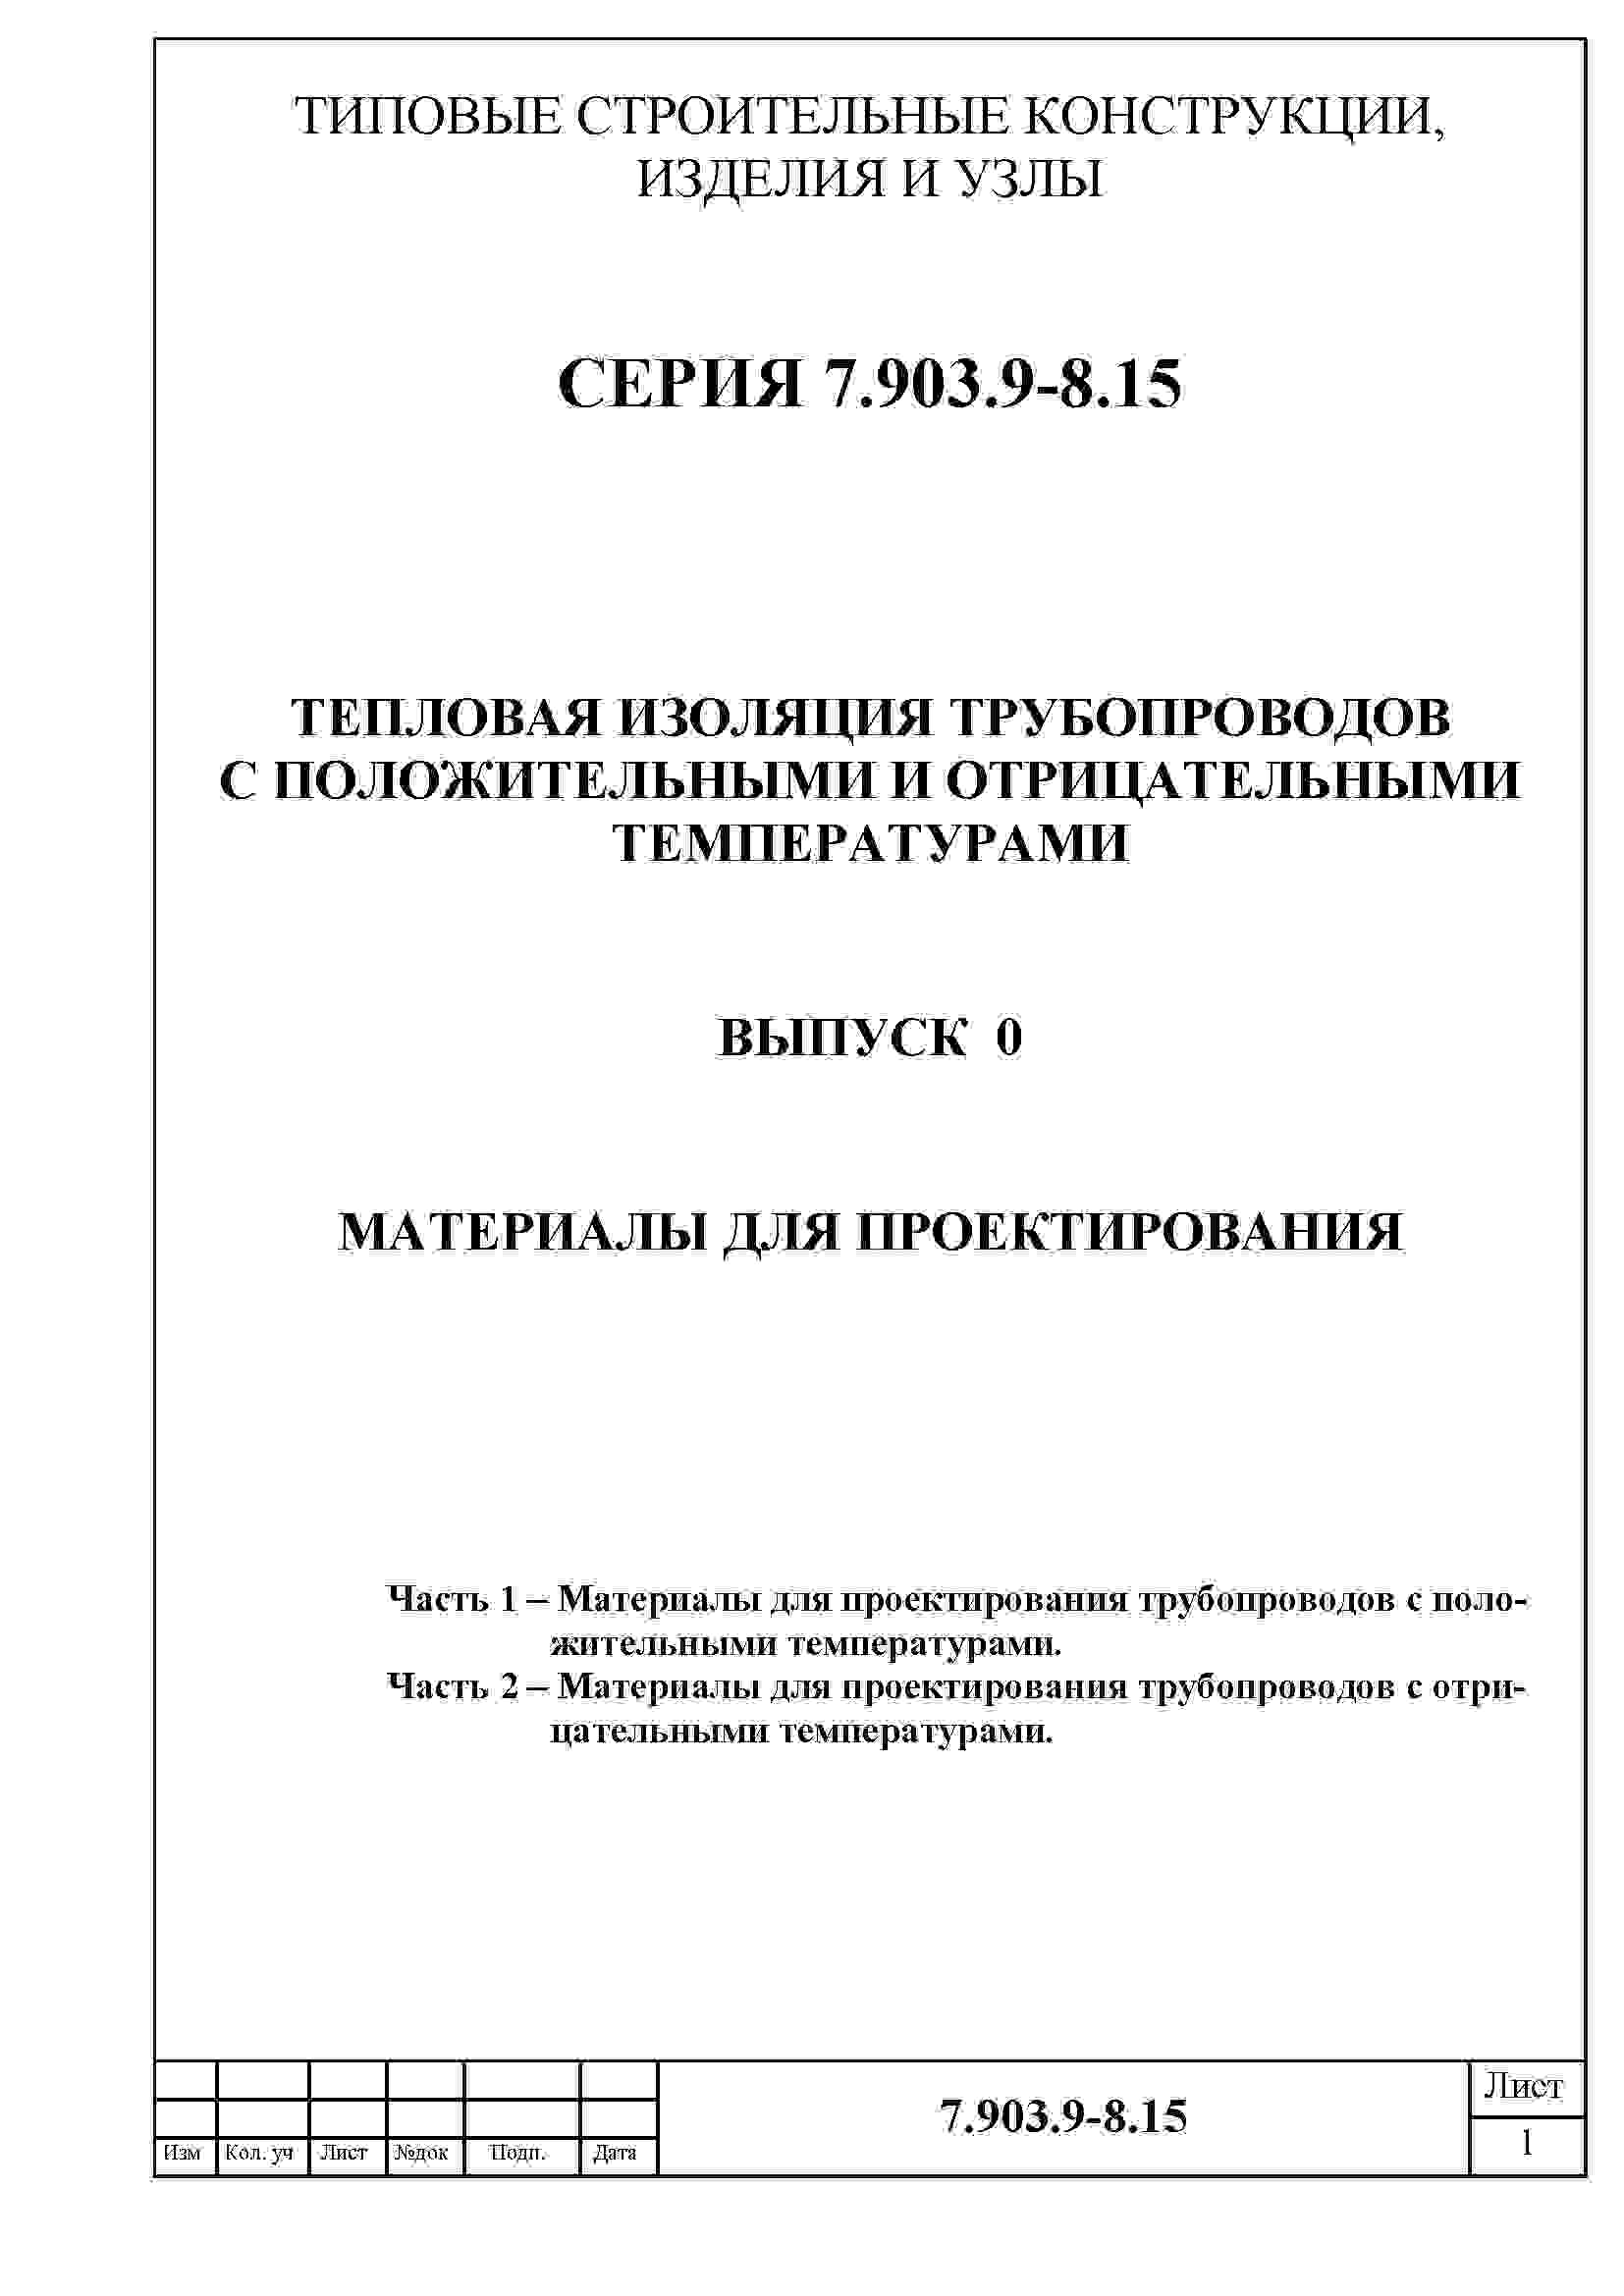 Состав альбома Серия 7.903.9-8.15 ТепловаяВыпуск 0 Материалы для проектирования.